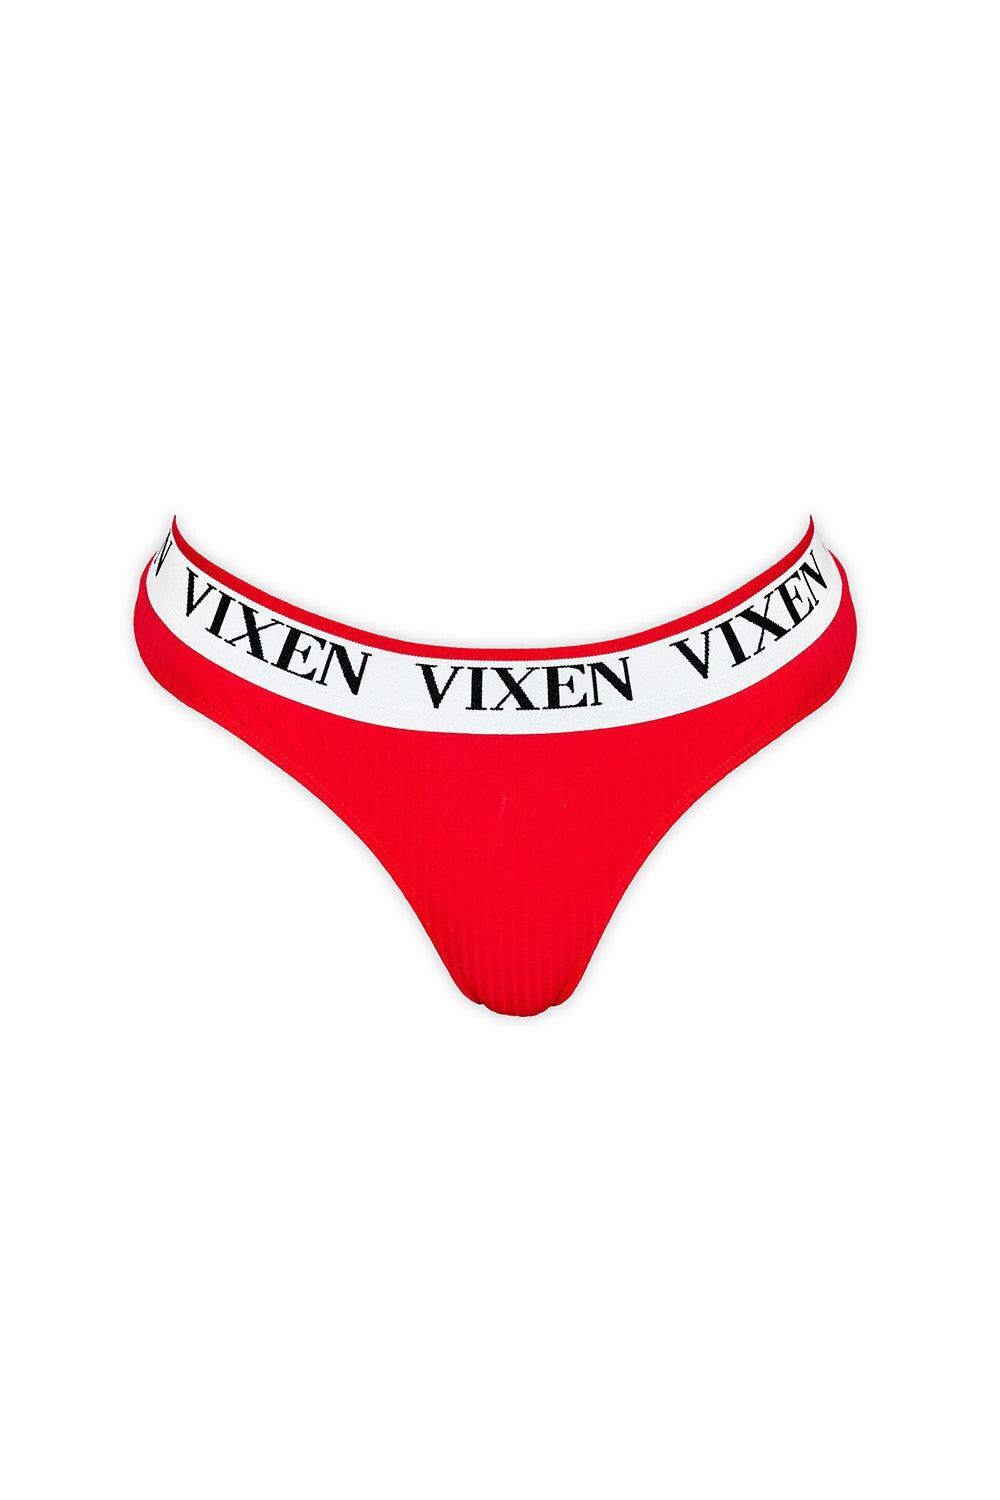 Vixen Icon Thong Panty